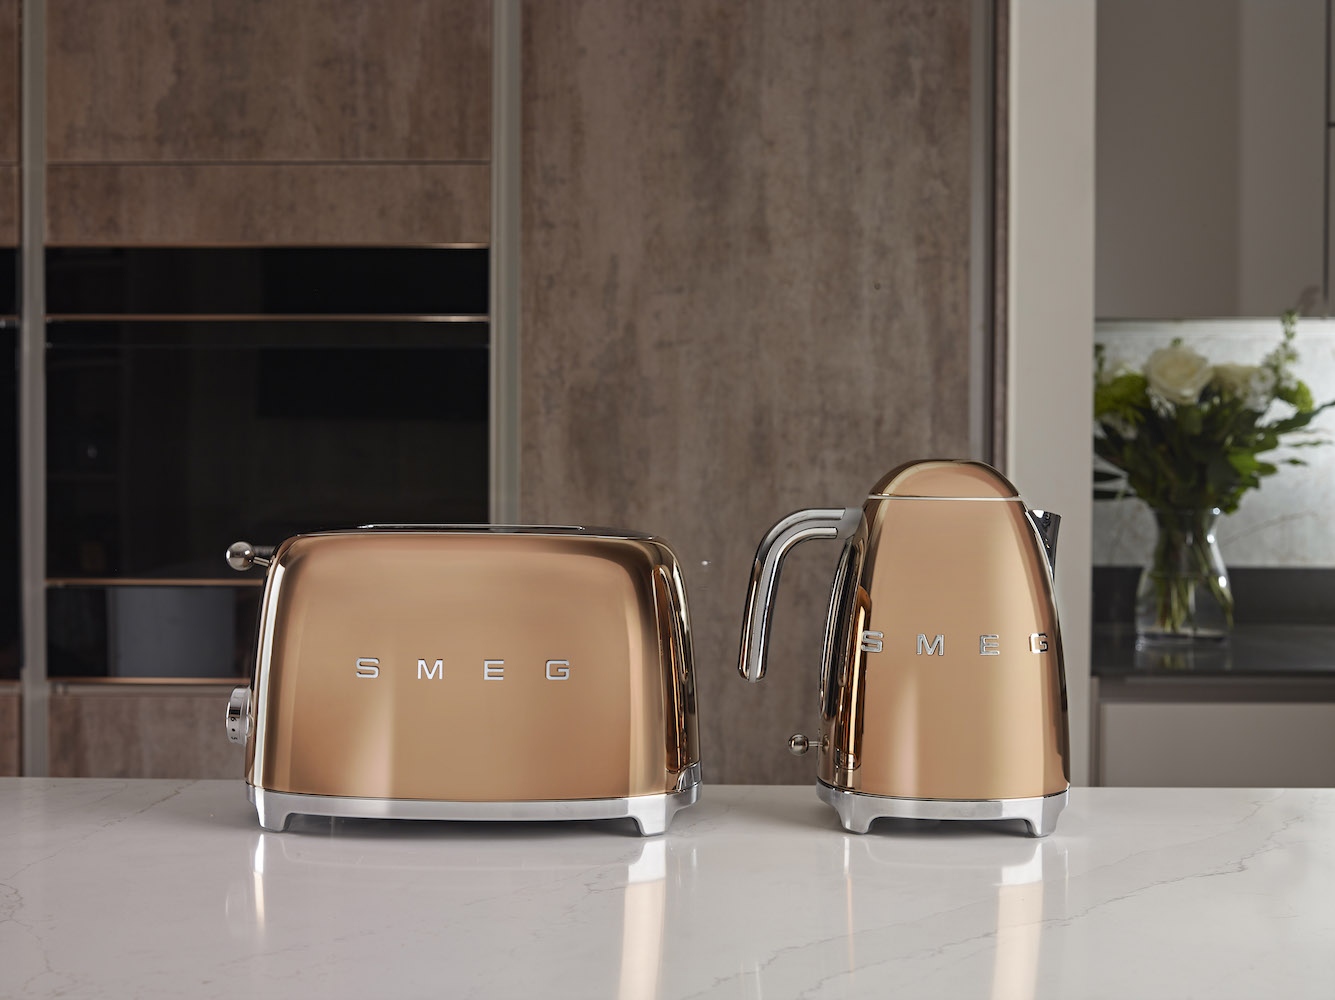 A design legalább akkora hangsúlyt kap a SMEG kisgépeknél, mint a csúcsminőség. Rosegold színben a SMEG konyhai gépek elegáns külsőt öltenek, bármely minőségi konyhában megállják a helyüket